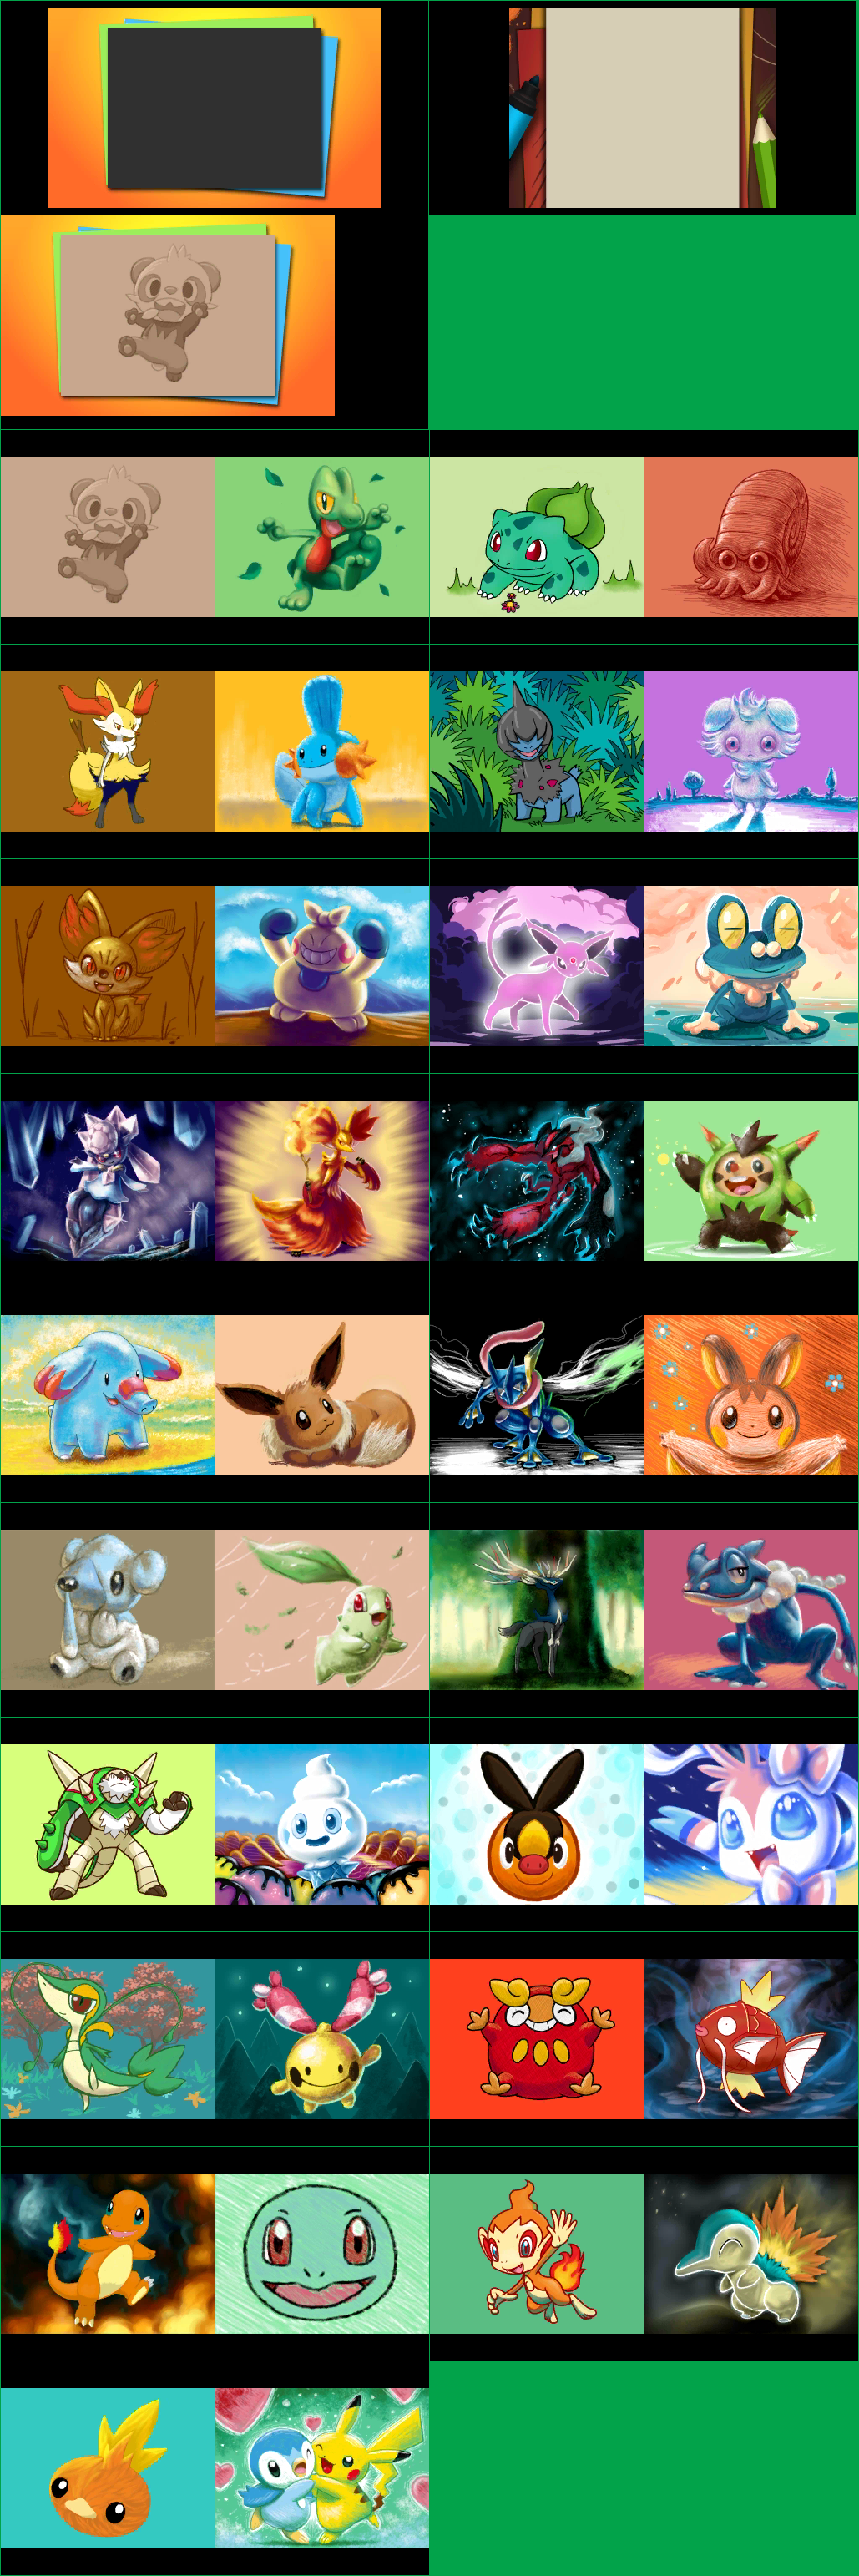 Pokémon Art Academy - Credits